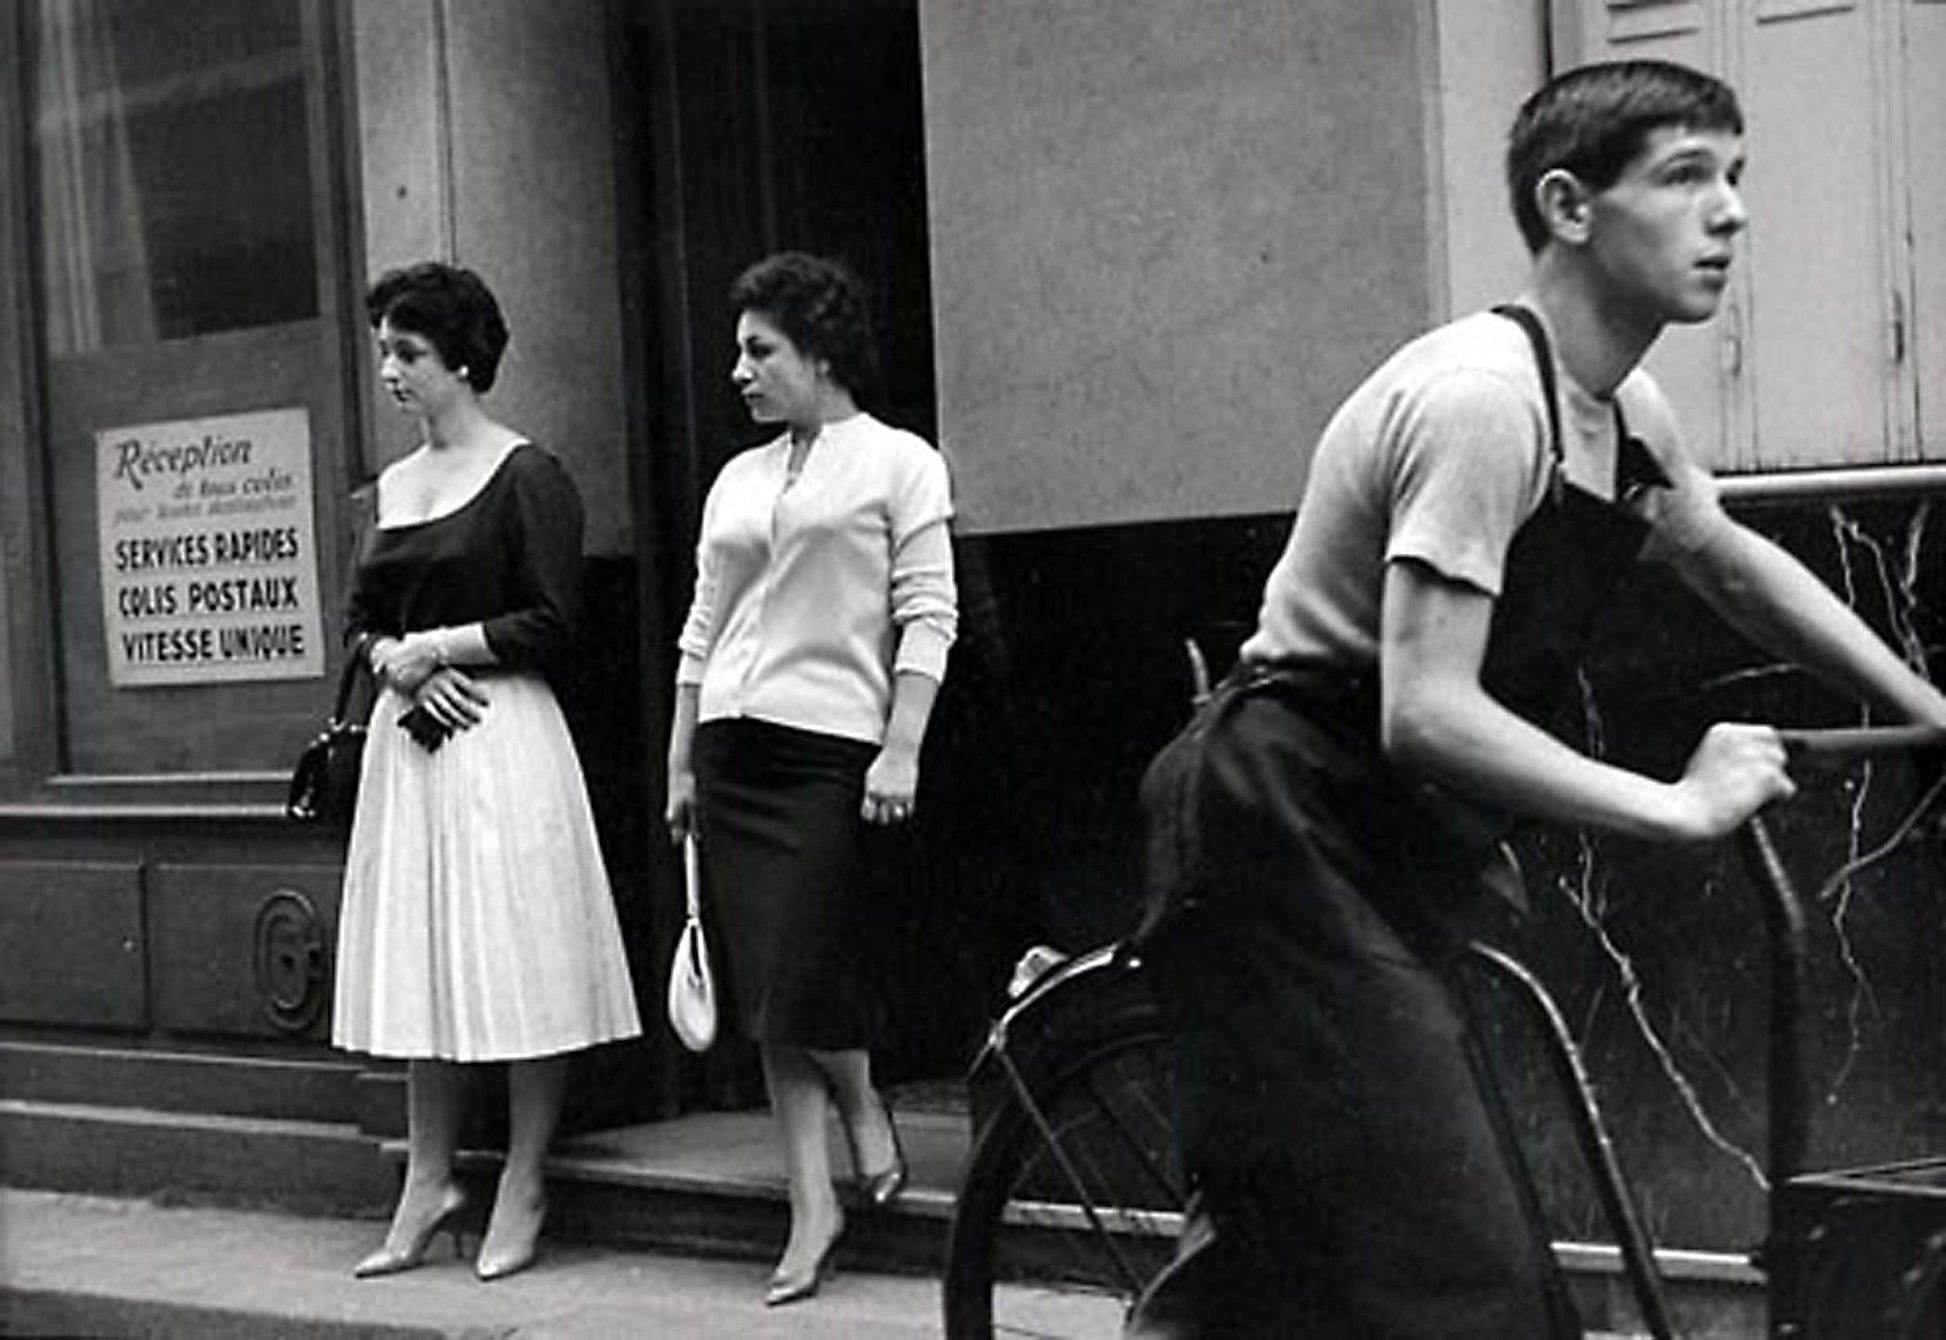 Brent Hannon photo Quick Service Women Paris 1956 Art Works Gallery